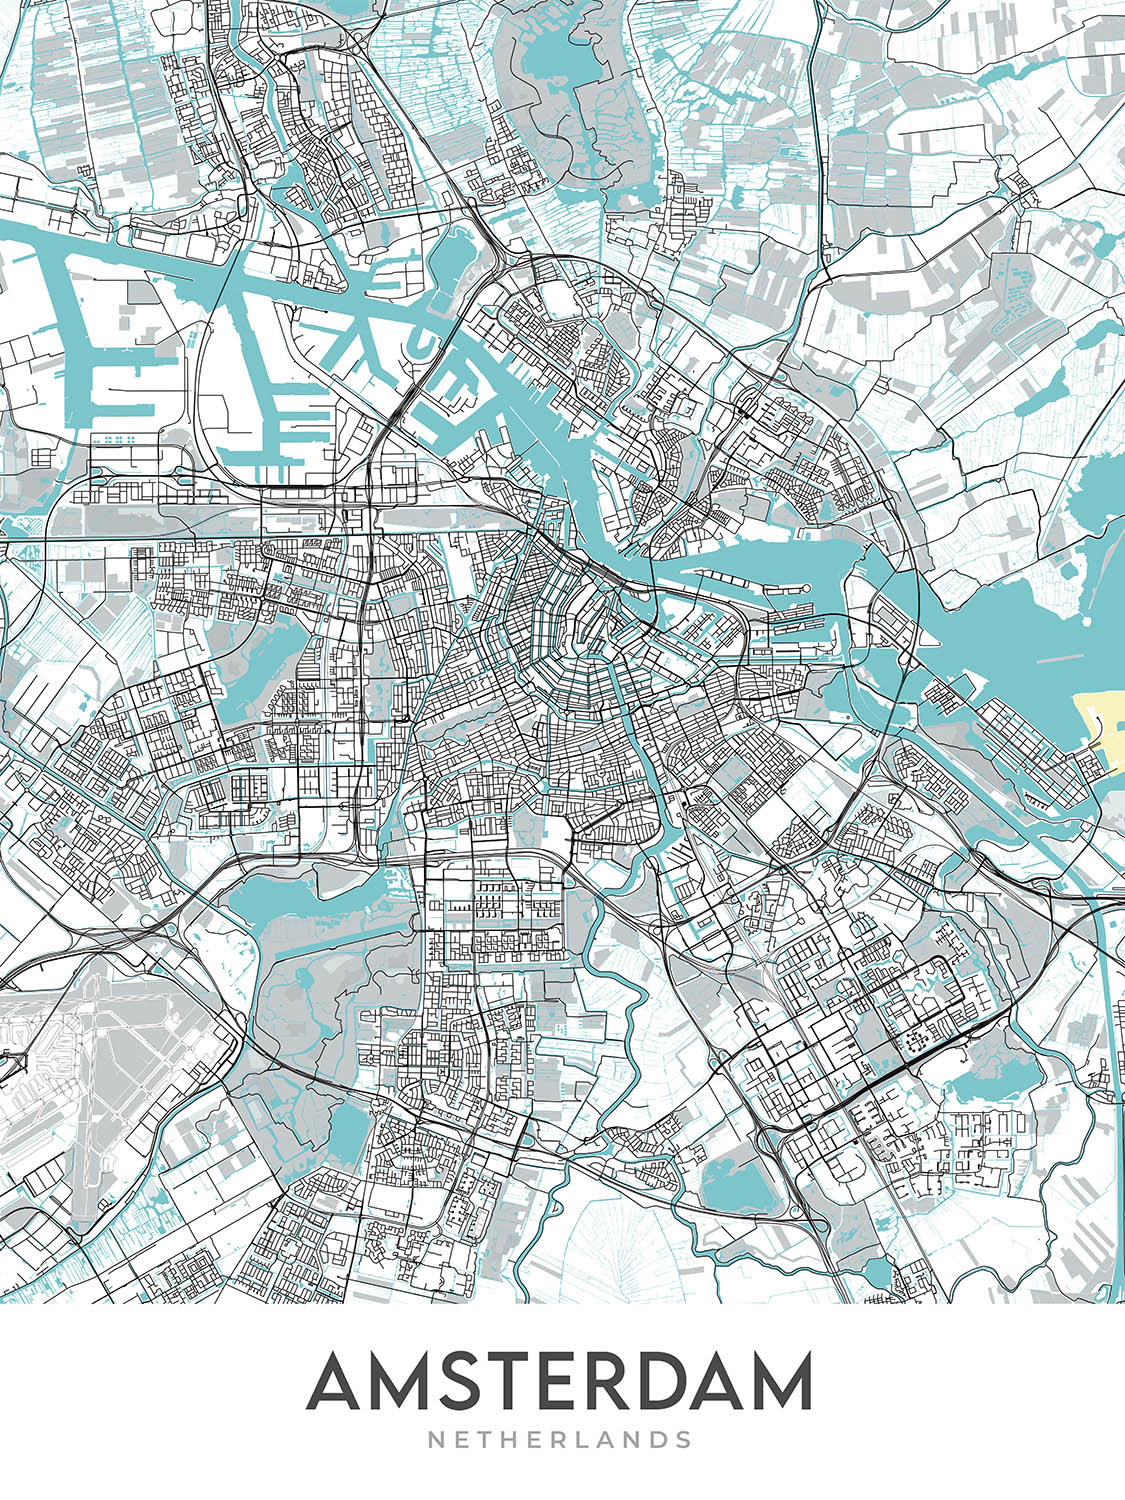 Moderner Stadtplan von Amsterdam, Niederlande: Rijksmuseum, Van Gogh Museum, Stedelijk Museum, Anne Frank Haus, Königlicher Palast